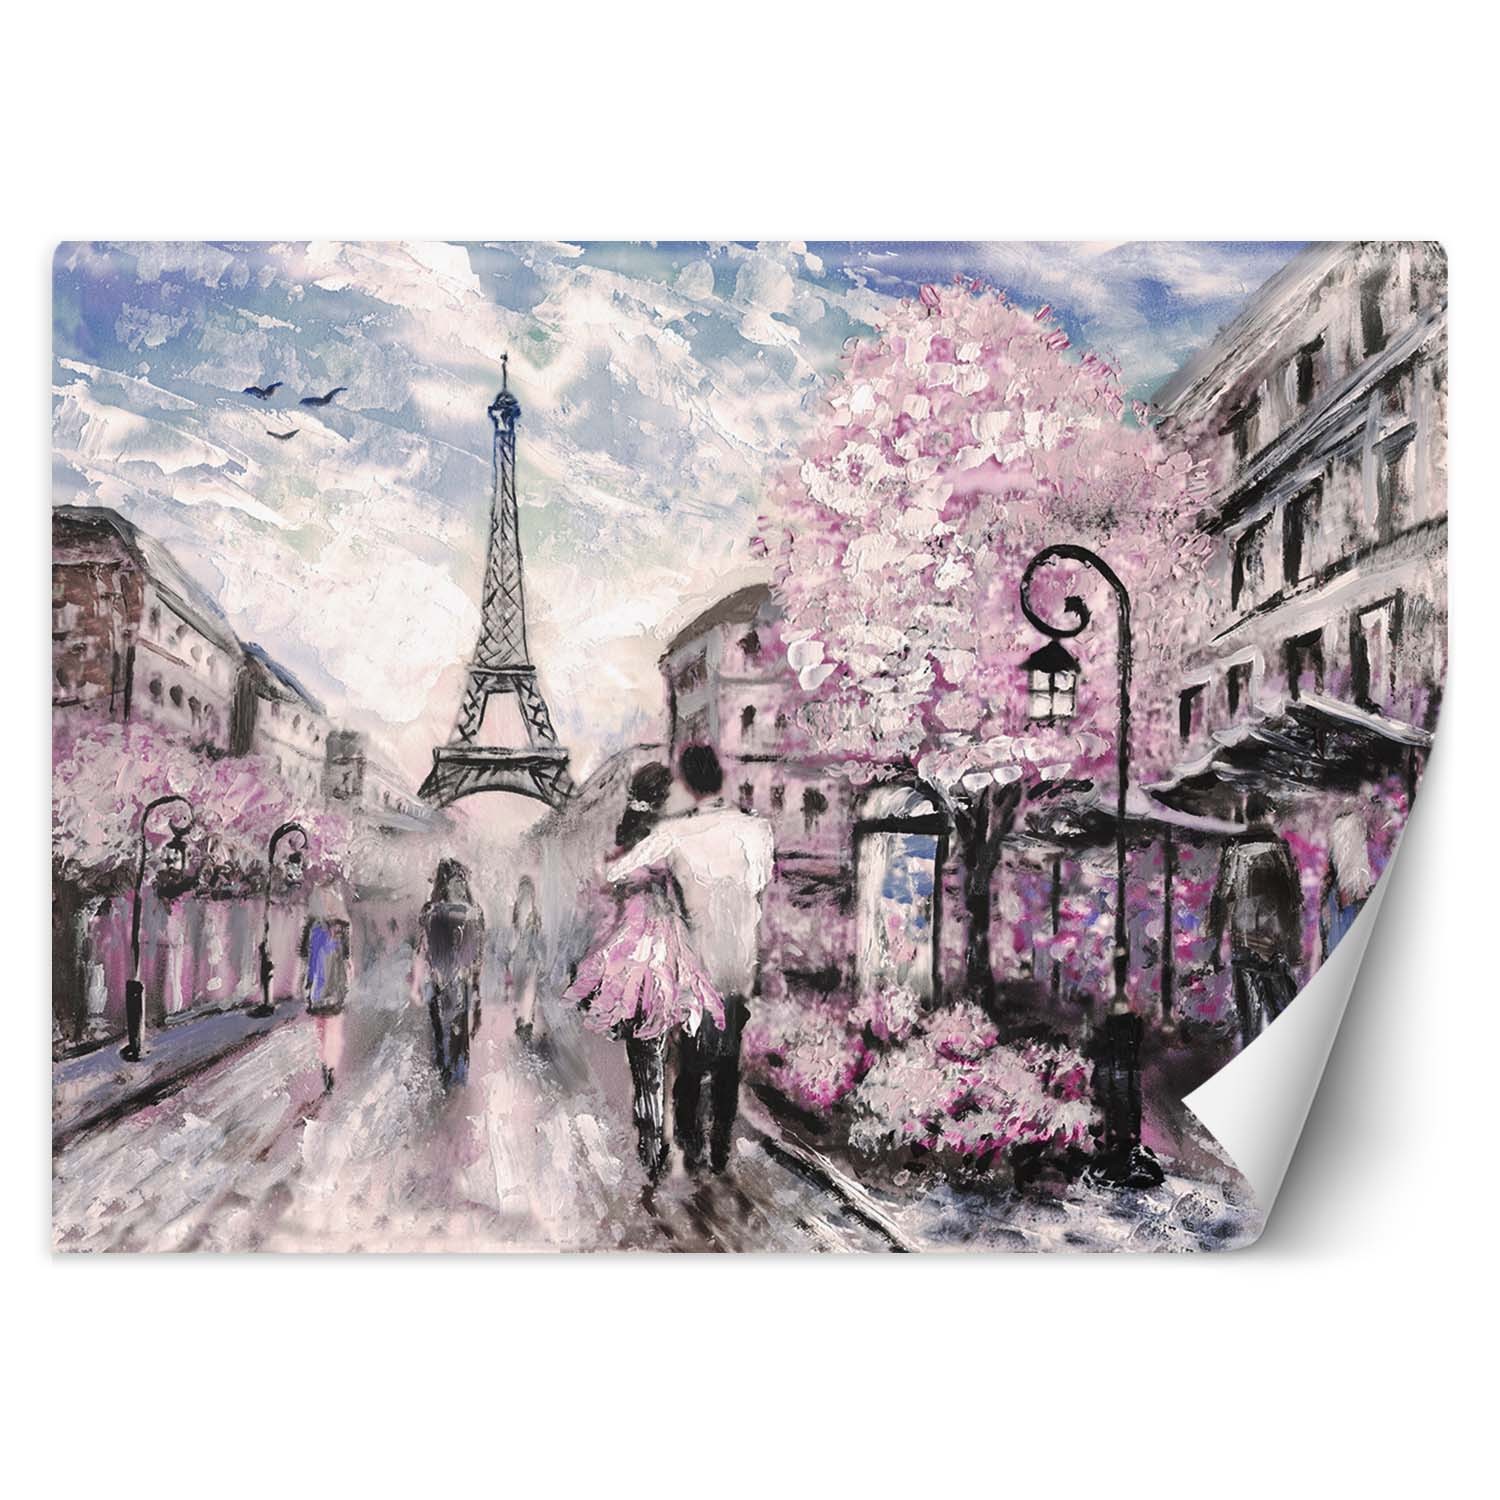 Trend24 – Behang – Parijs In Het Voorjaar – Behangpapier – Fotobehang – Behang Woonkamer – 450x315x2 cm – Incl. behanglijm